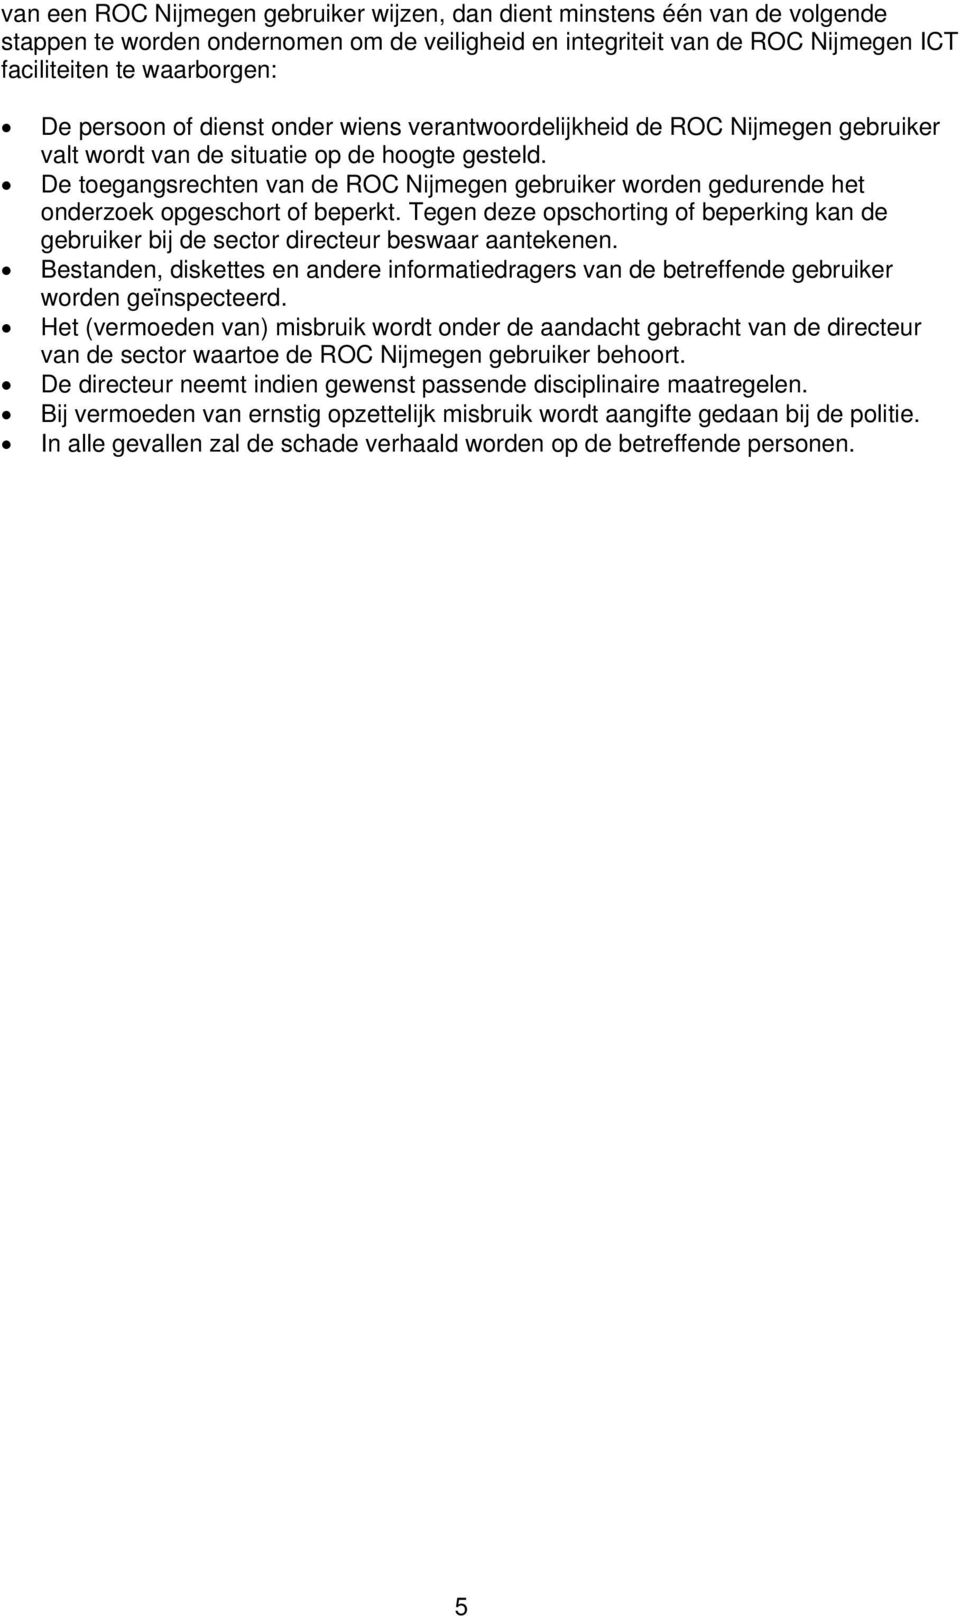 De toegangsrechten van de ROC Nijmegen gebruiker worden gedurende het onderzoek opgeschort of beperkt. Tegen deze opschorting of beperking kan de gebruiker bij de sector directeur beswaar aantekenen.